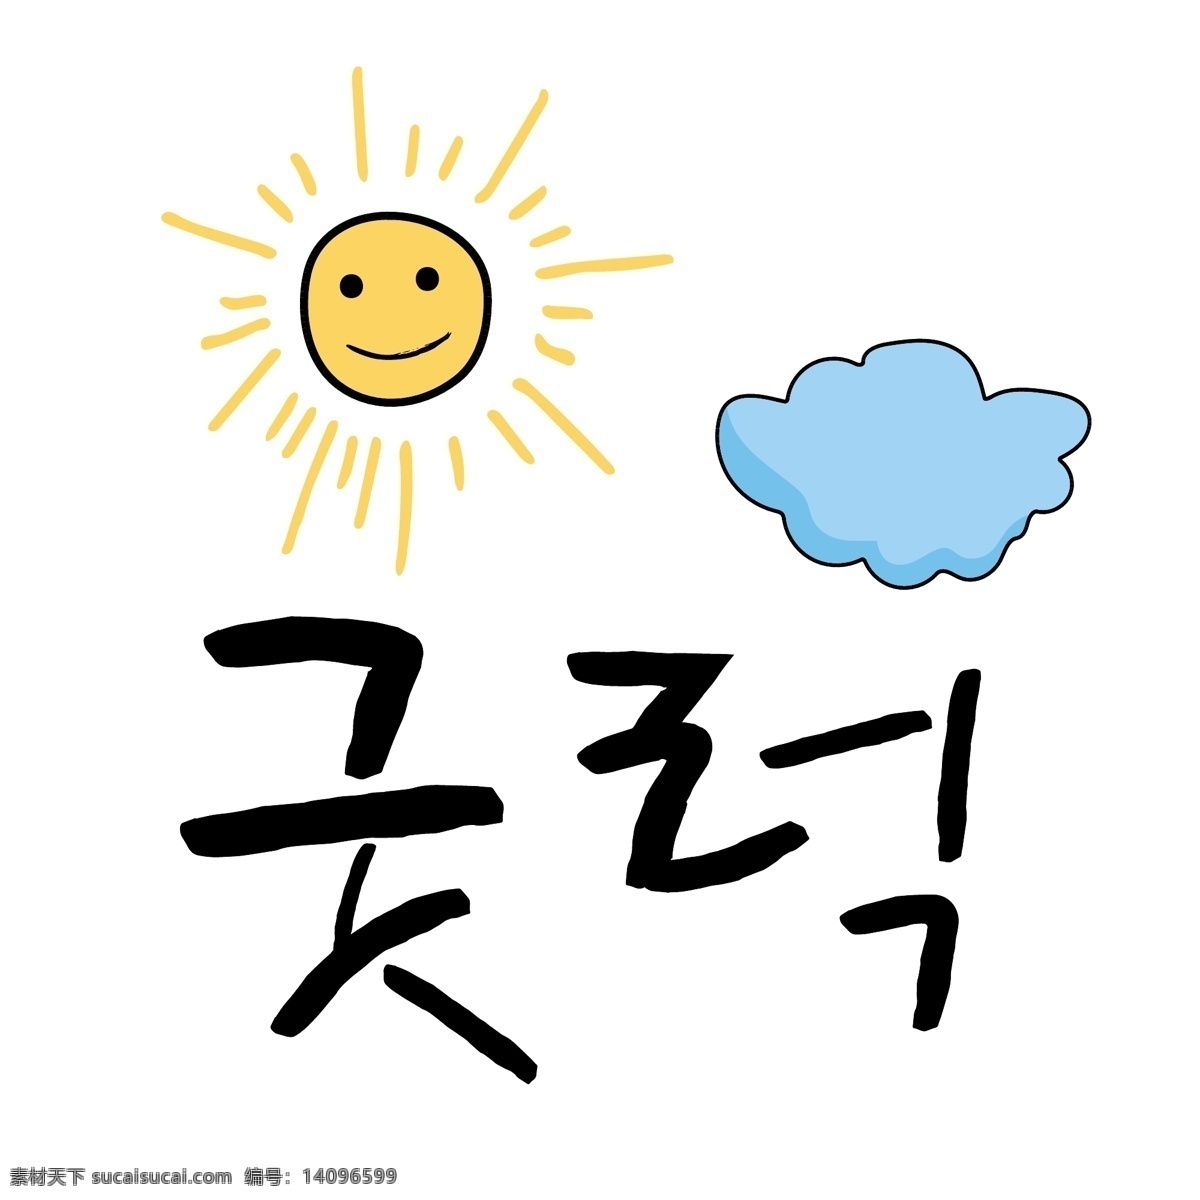 太阳 云 韩国 常用语 周边 肝药 当啷 名黄色 对话 漫画 向量 波纹 日常用语 卡通 蓝色